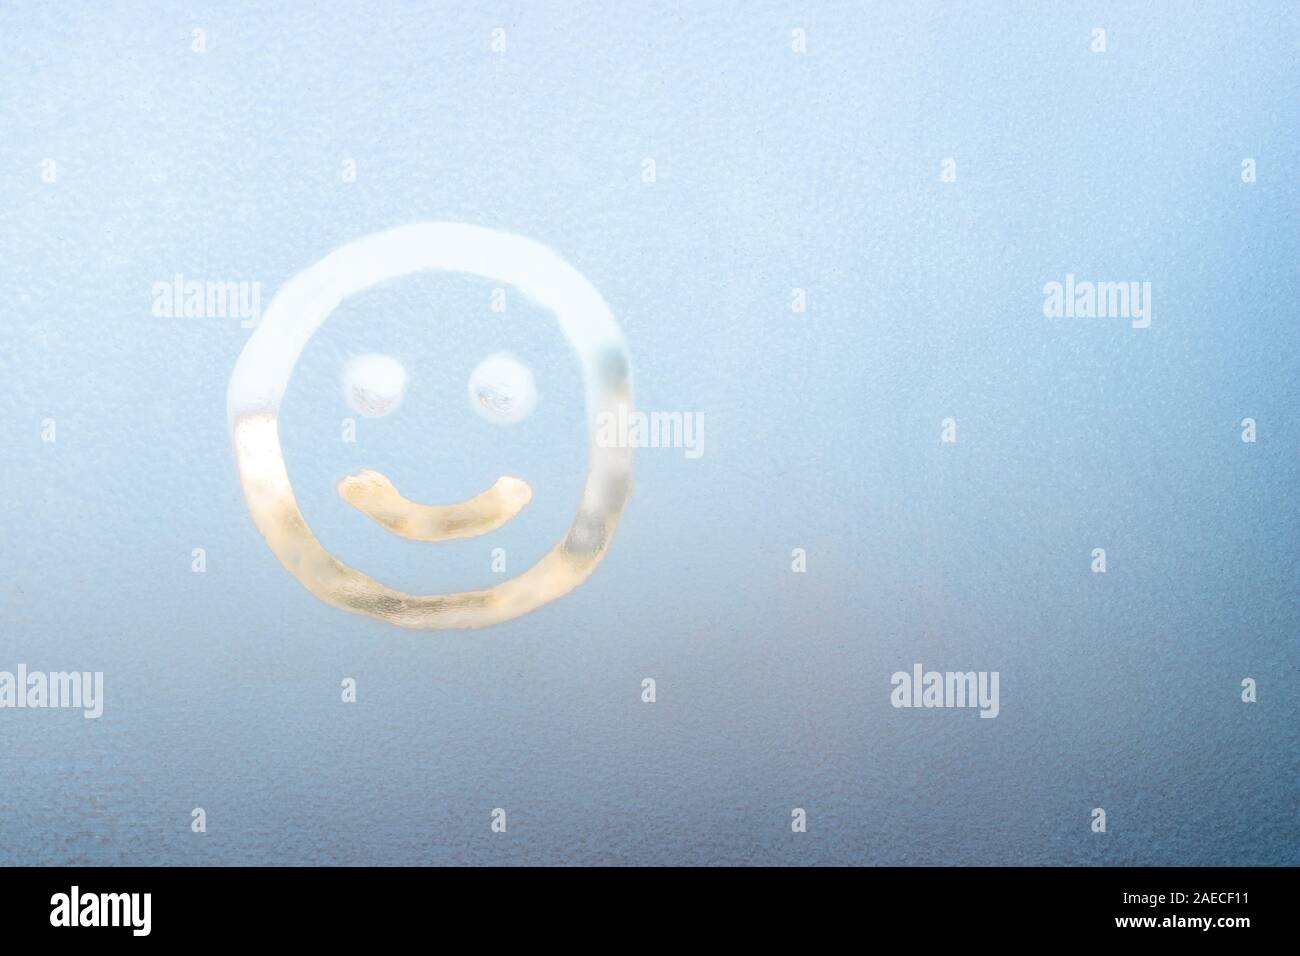 Lächelndes Gesicht auf einem gefrorenen Fenster gemalt, Winter Spaß,  Jahreszeit und hoffen, Konzept, Text, Copyspace Stockfotografie - Alamy